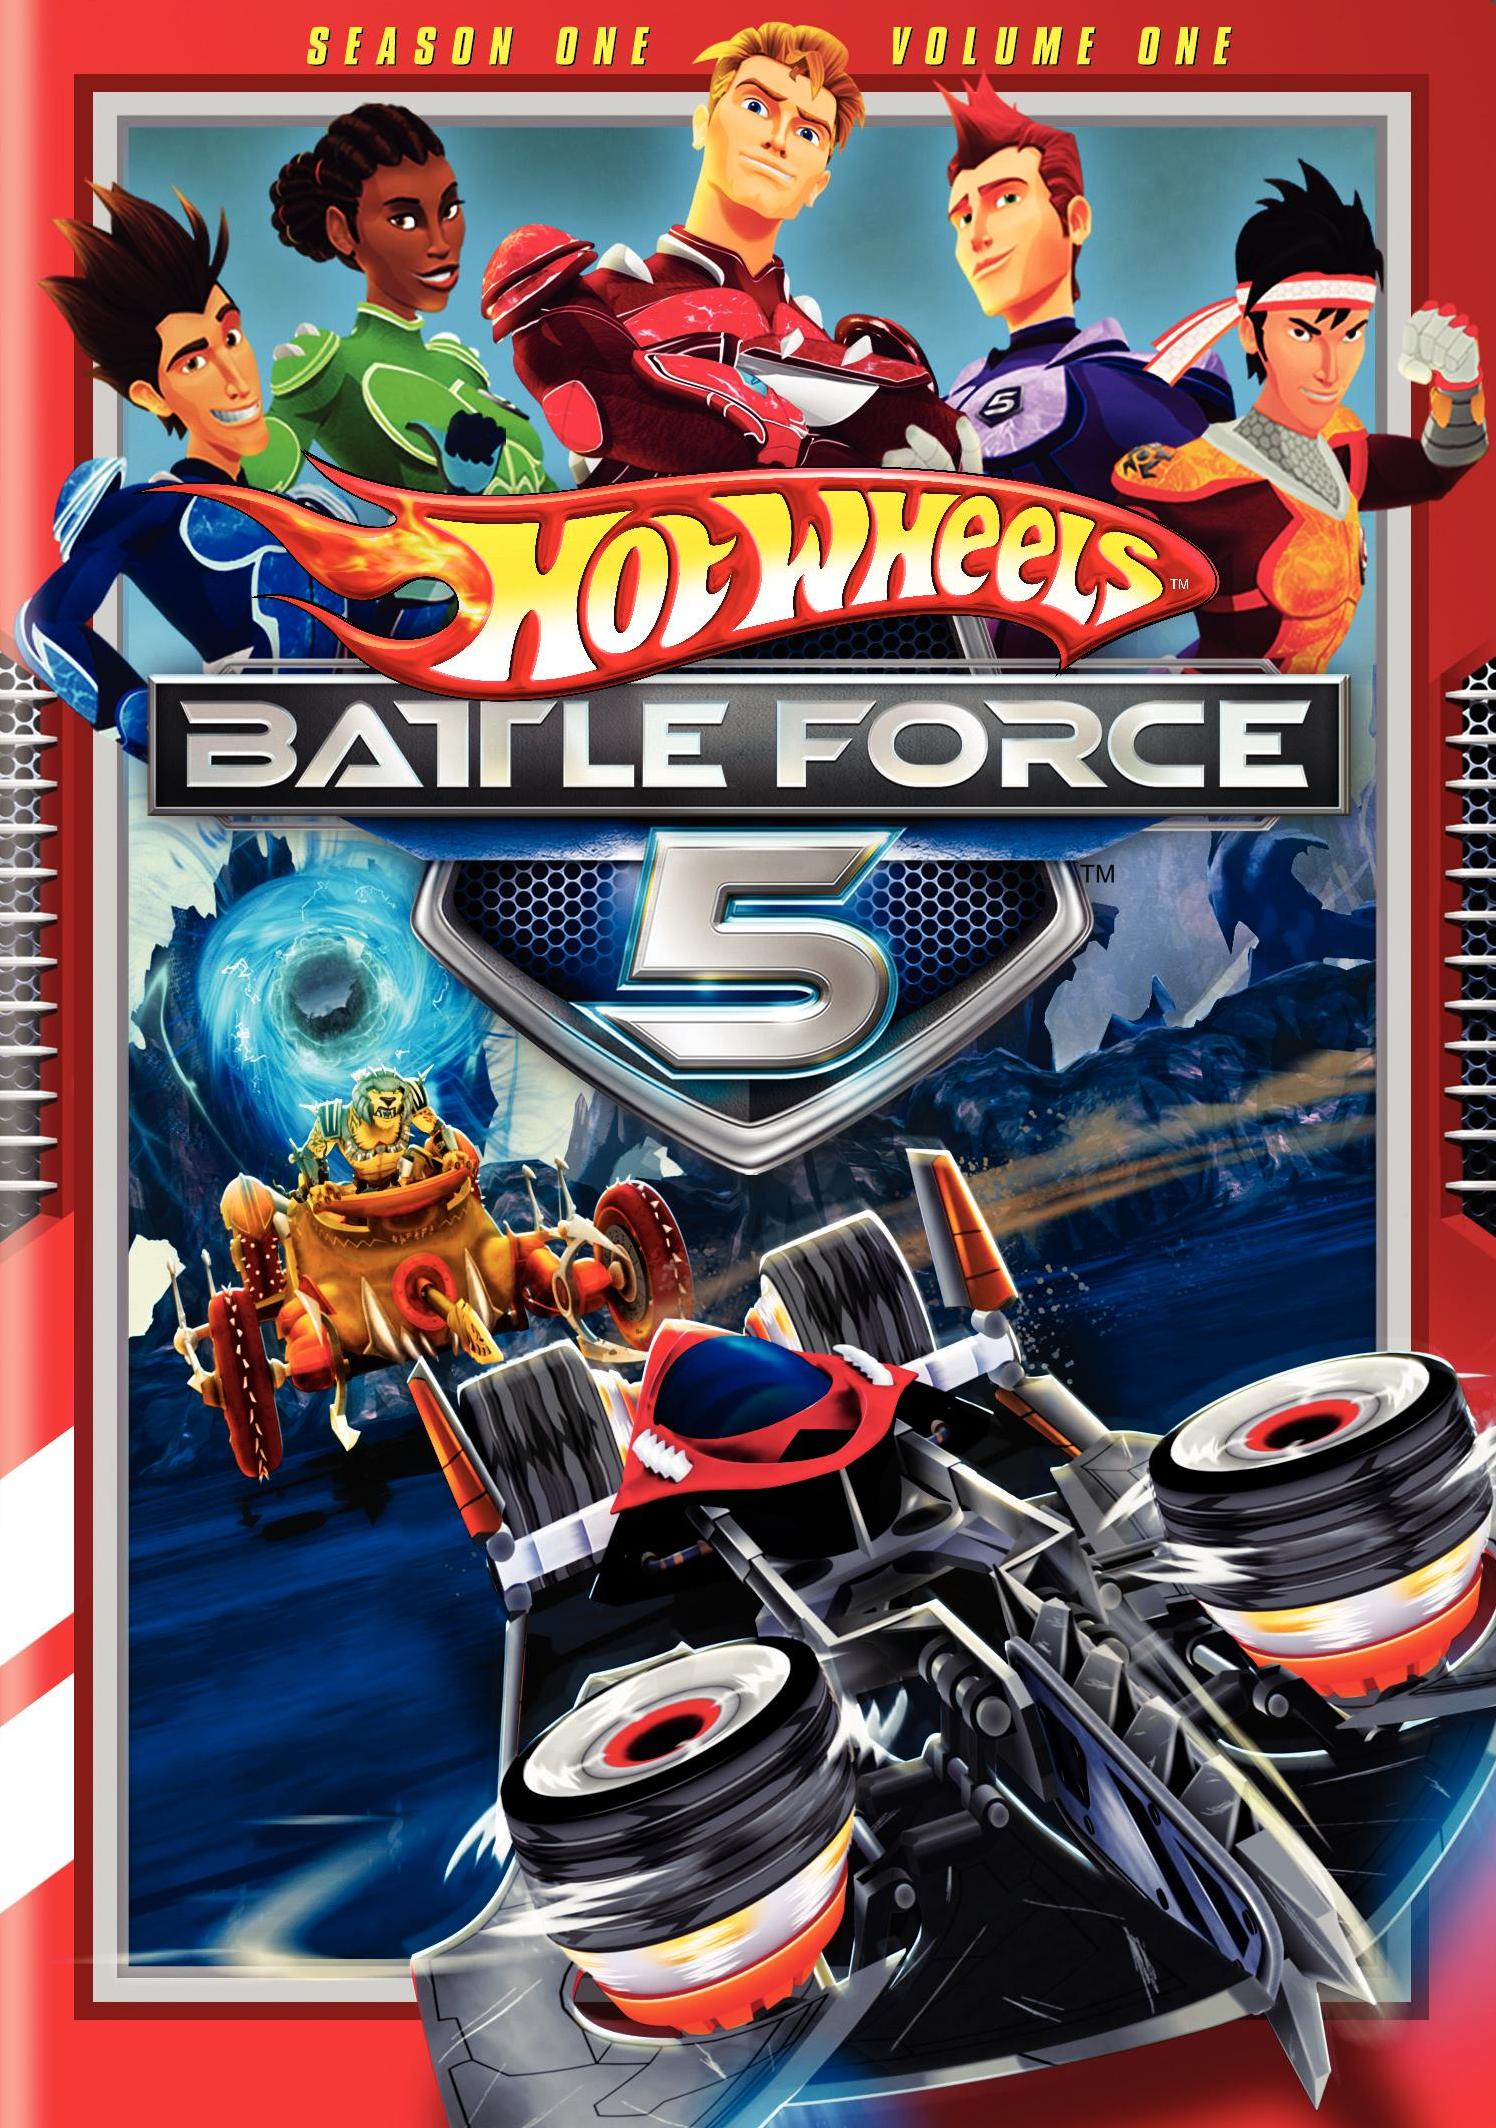 Hot Wheels: Battle Force 5 Season 1, Vol. 1 - Best Buy